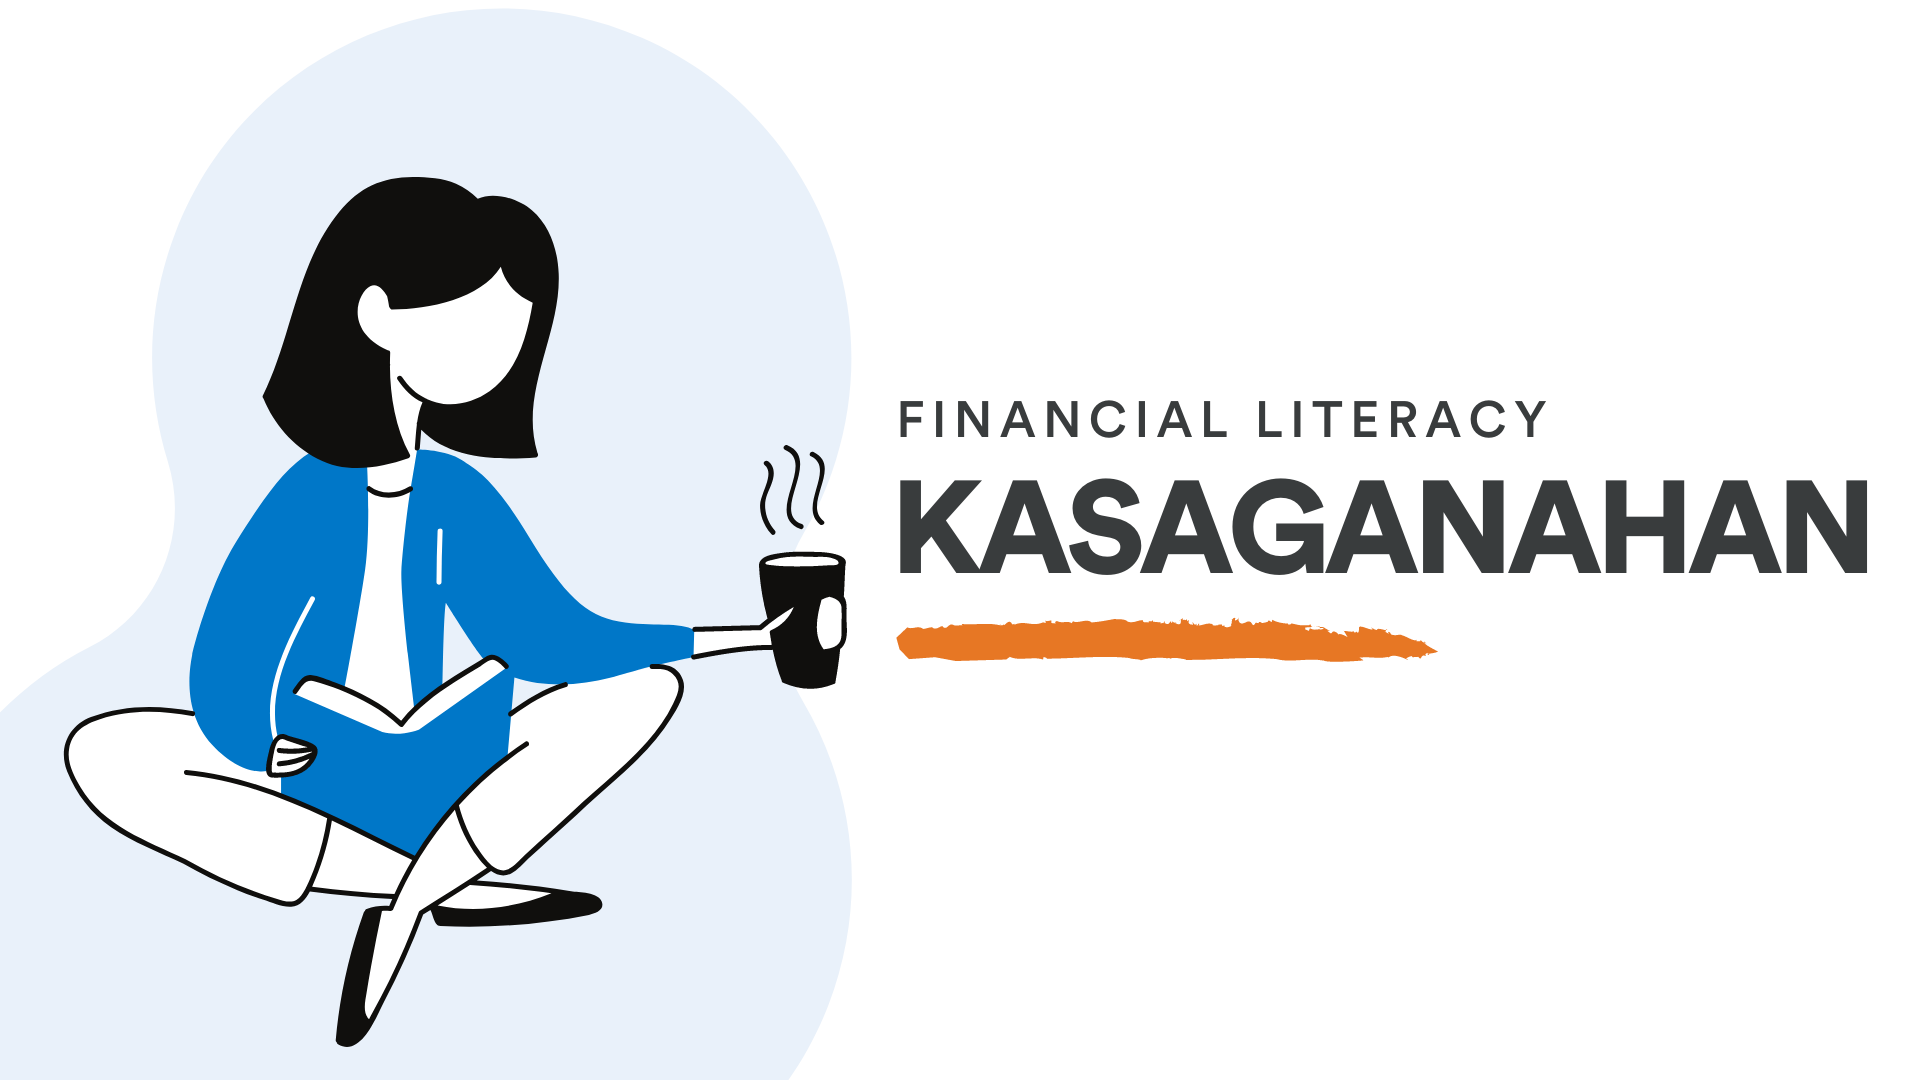 Kasaganahan: Financial Literacy